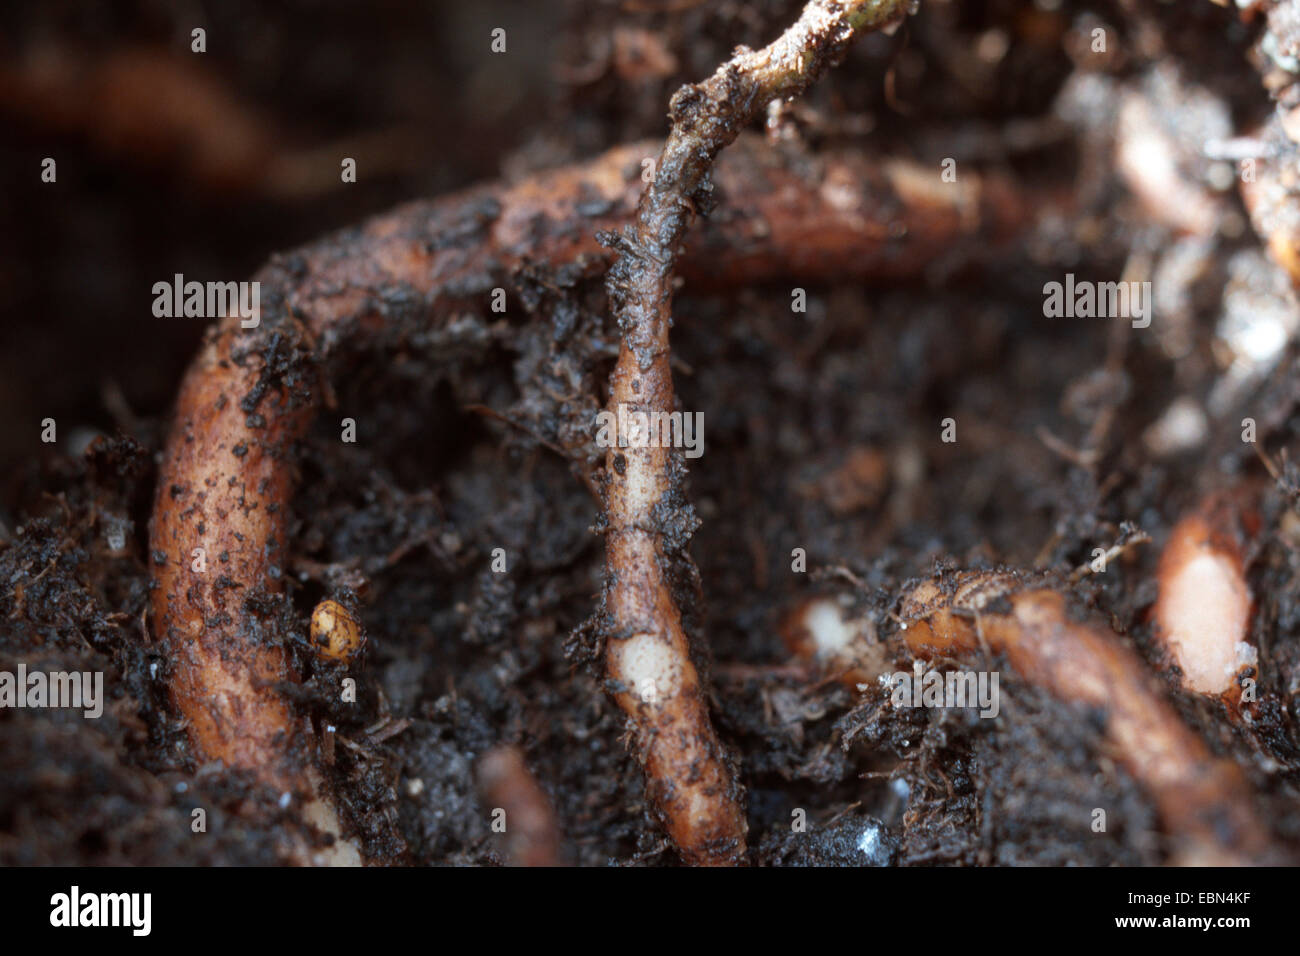 geranium (Pelargonium sidoides, Pelargonium reniforme), roots Stock Photo